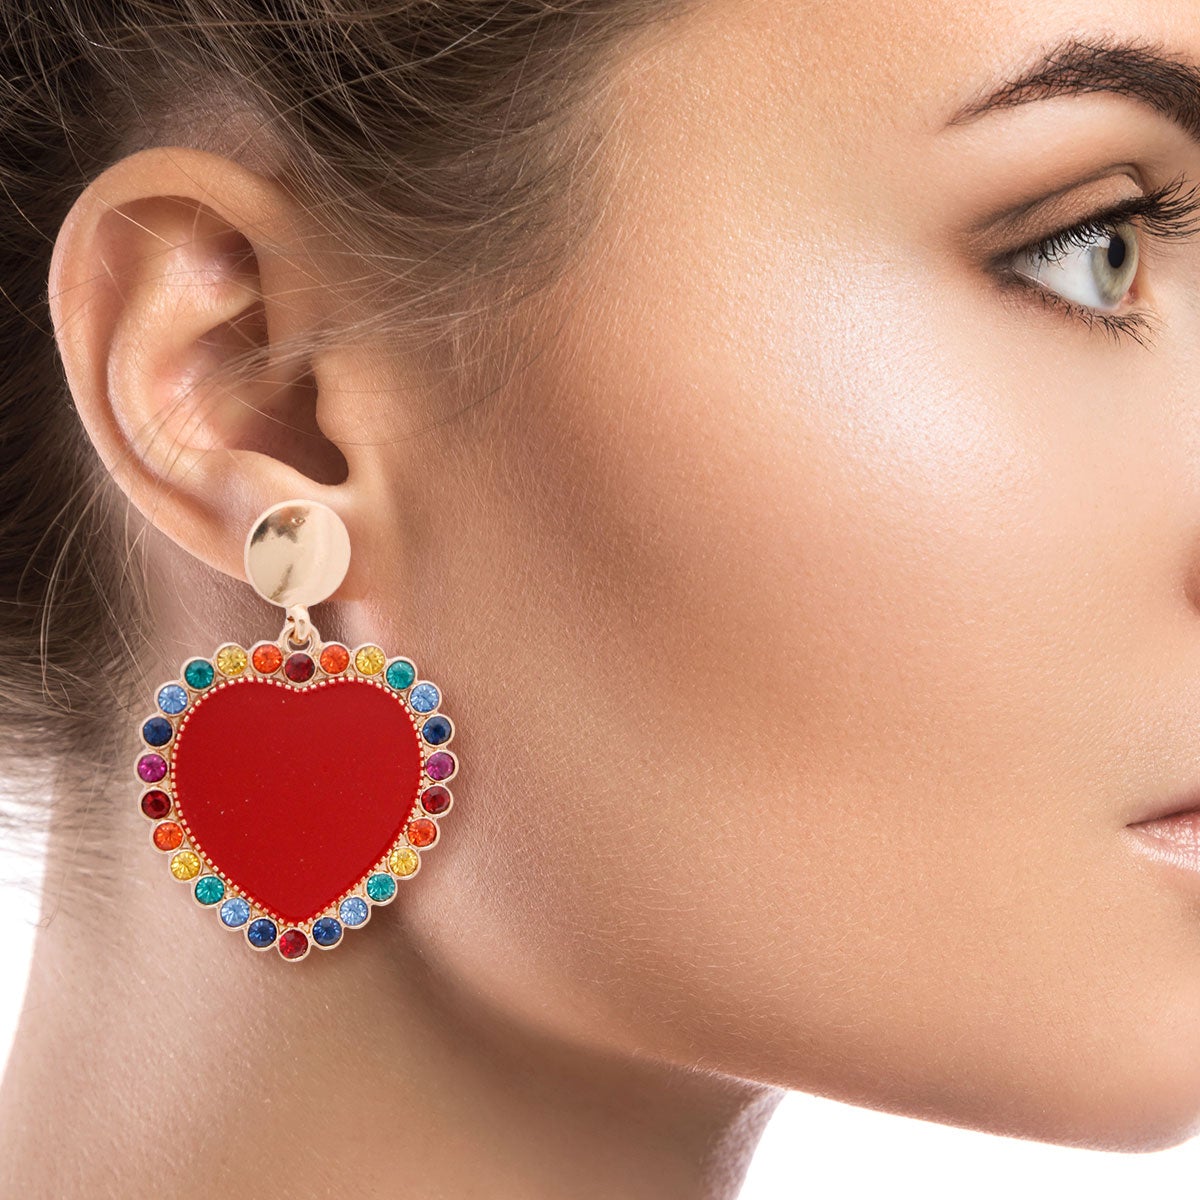 Red Heart and Rhinestone Earrings